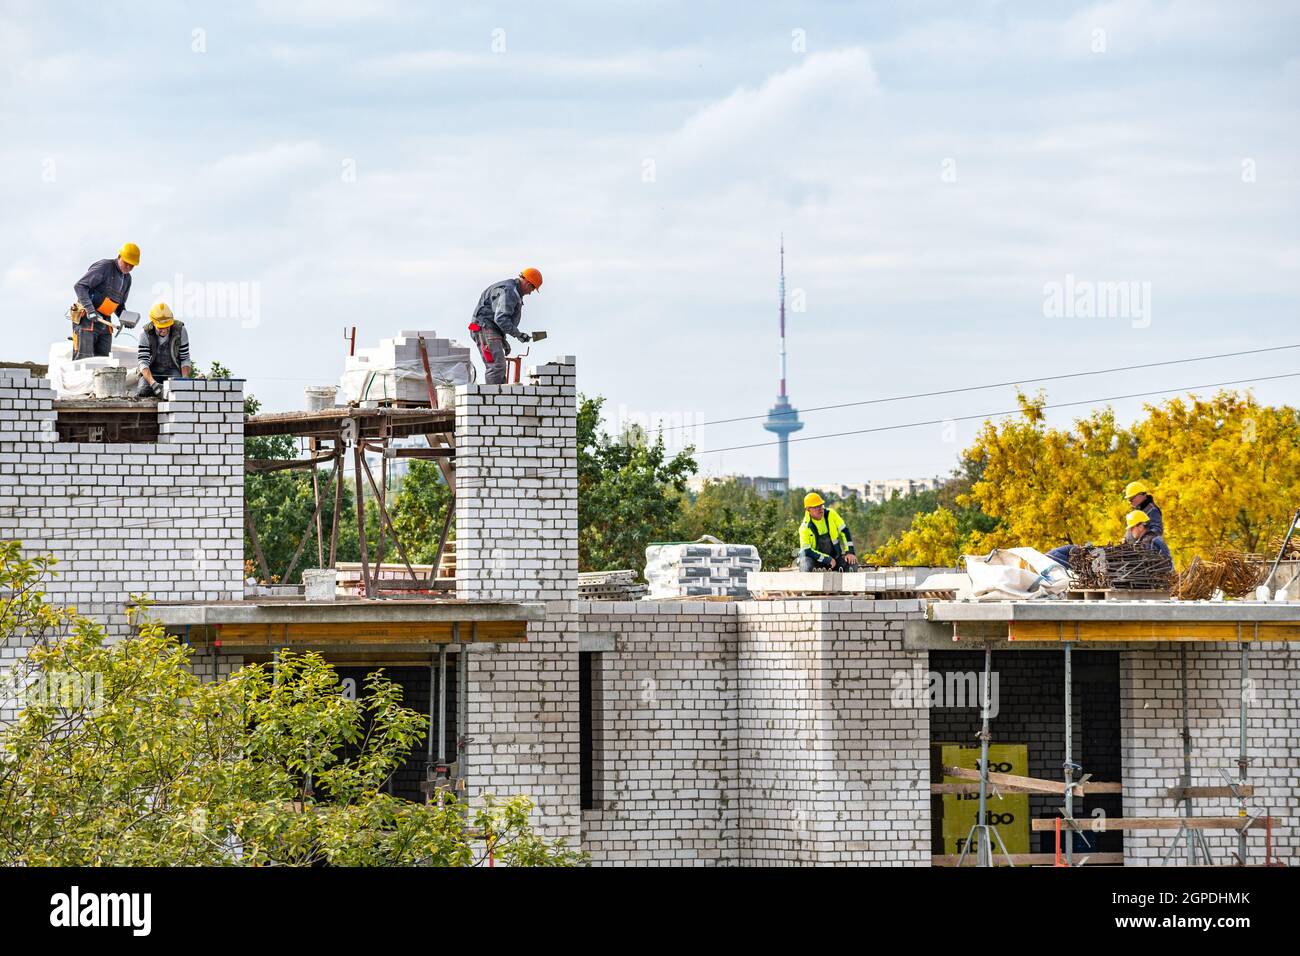 Vilnius, Lituanie - septembre 28 2021: Nouveaux bâtiments ou maisons en construction avec des travailleurs à l'œuvre contre le ciel nuageux avec la tour de télévision de Vilnius Banque D'Images